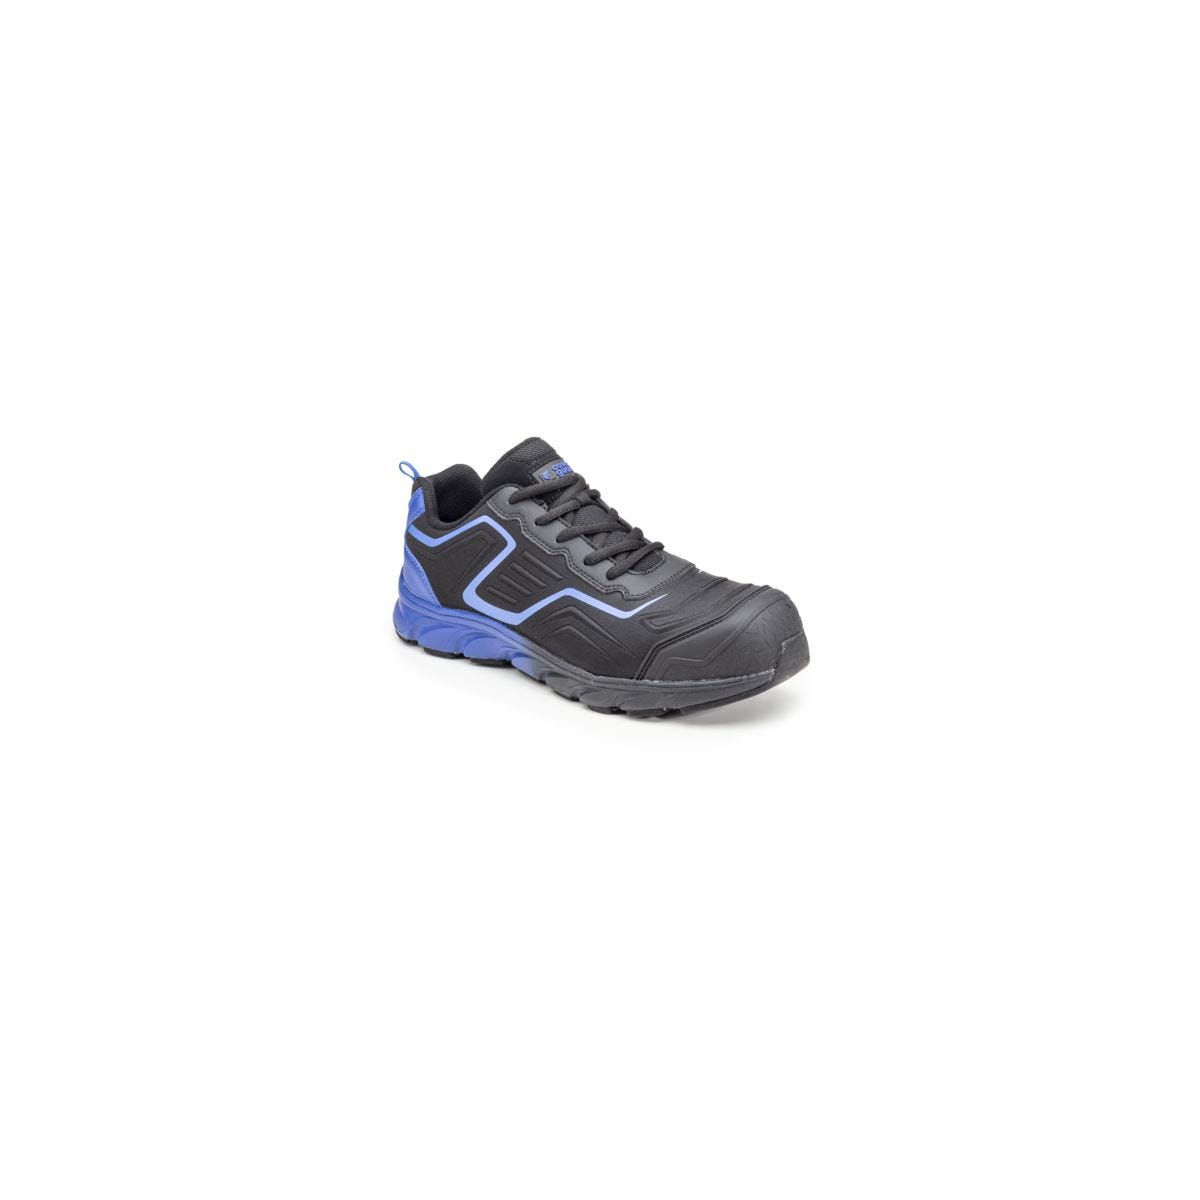 Chaussures de sécurité S3 SAPHIR Basse Maille Noir Bleu - COVERGUARD - Taille 47 0